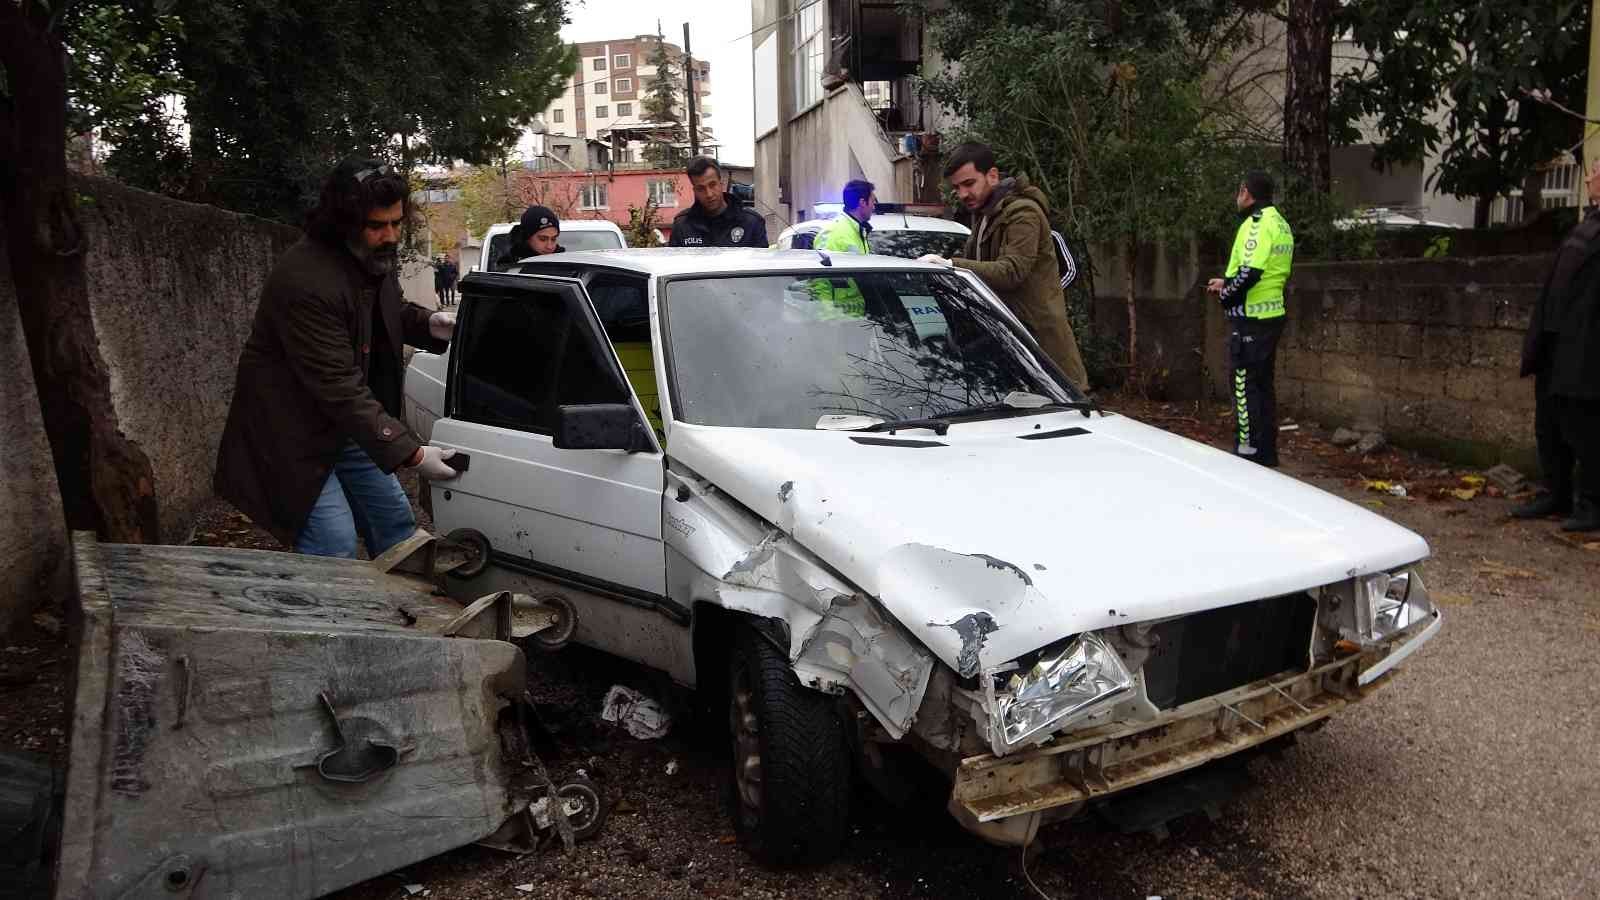 Dur ihtarına uymadı, polis aracına çarpıp kaçtı #adana